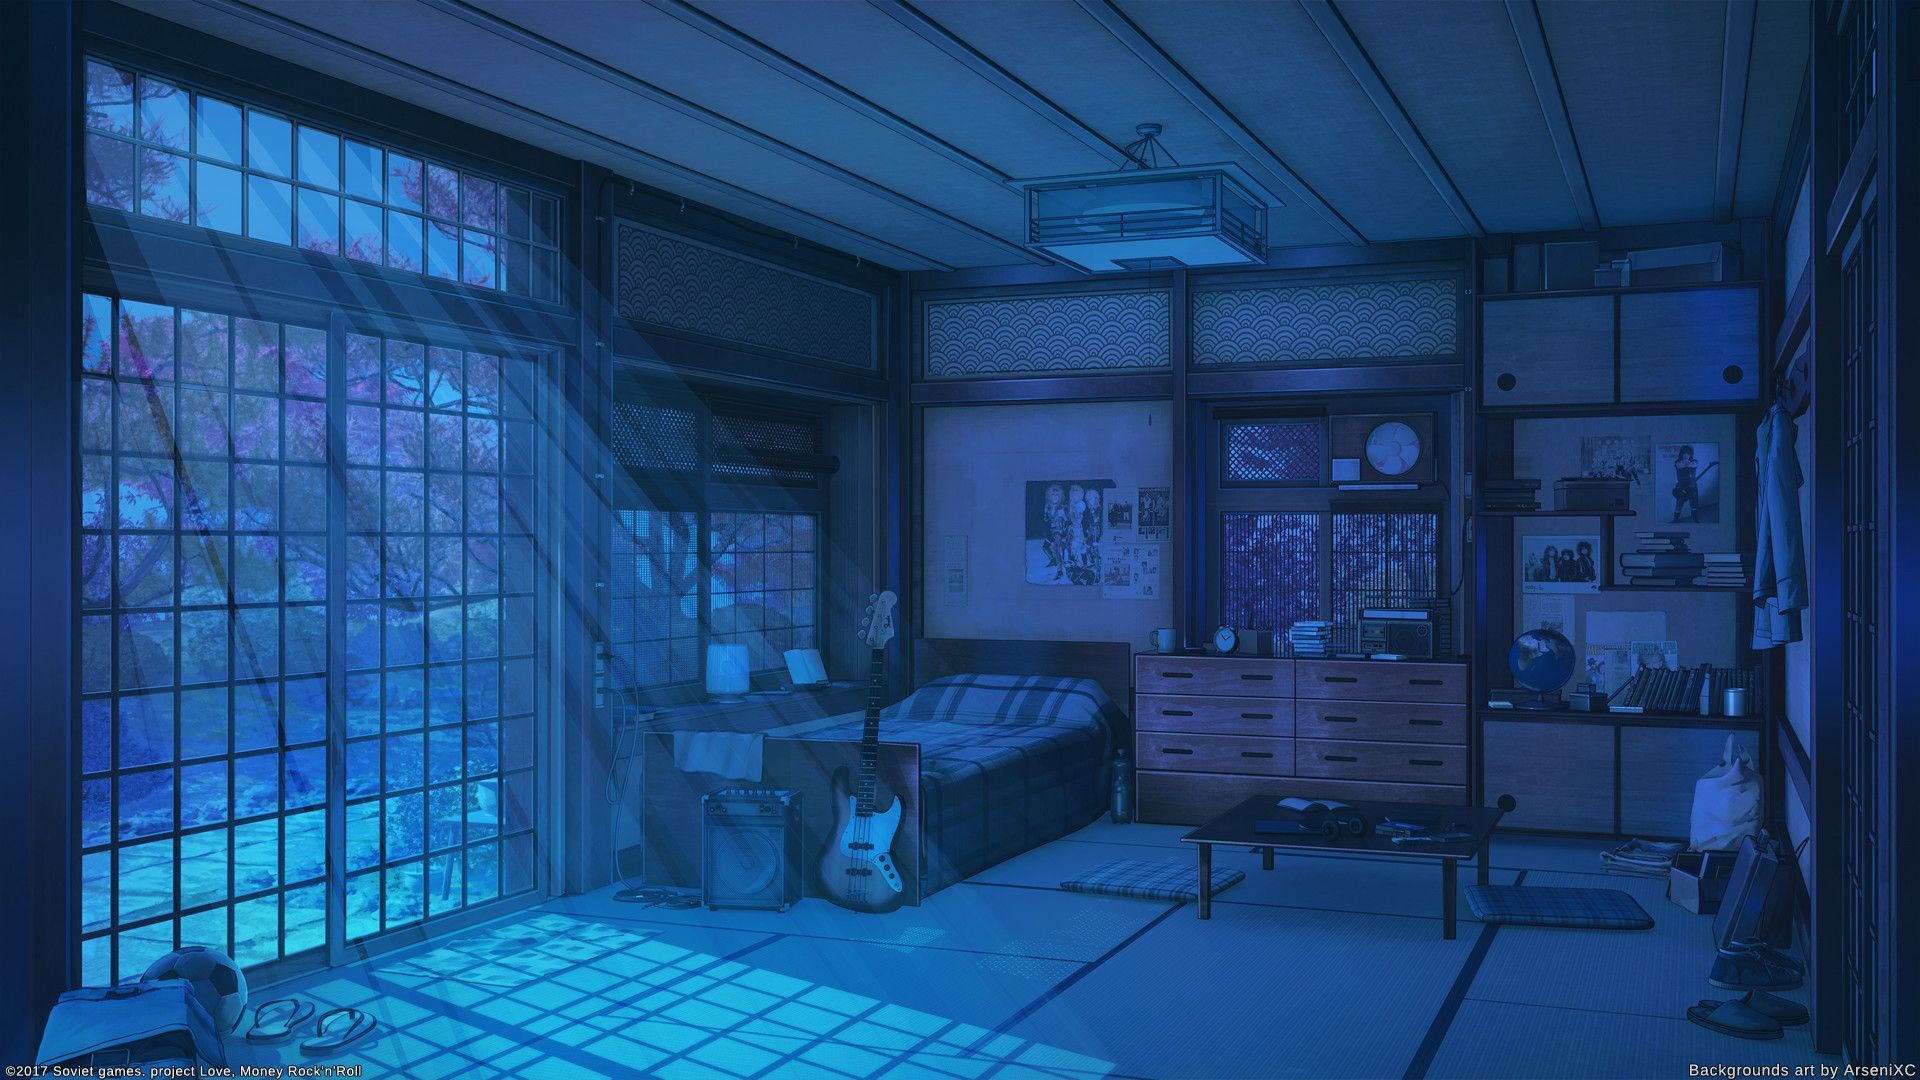 Bạn là một fan hâm mộ của Anime và muốn tìm một hình nền đẹp cho phòng tối của mình? Hãy xem qua bộ sưu tập những hình nền Anime phòng tối đầy bí ẩn và huyền bí. Bạn sẽ cảm thấy như đang lạc vào một thế giới của những nhân vật yêu thích của mình.